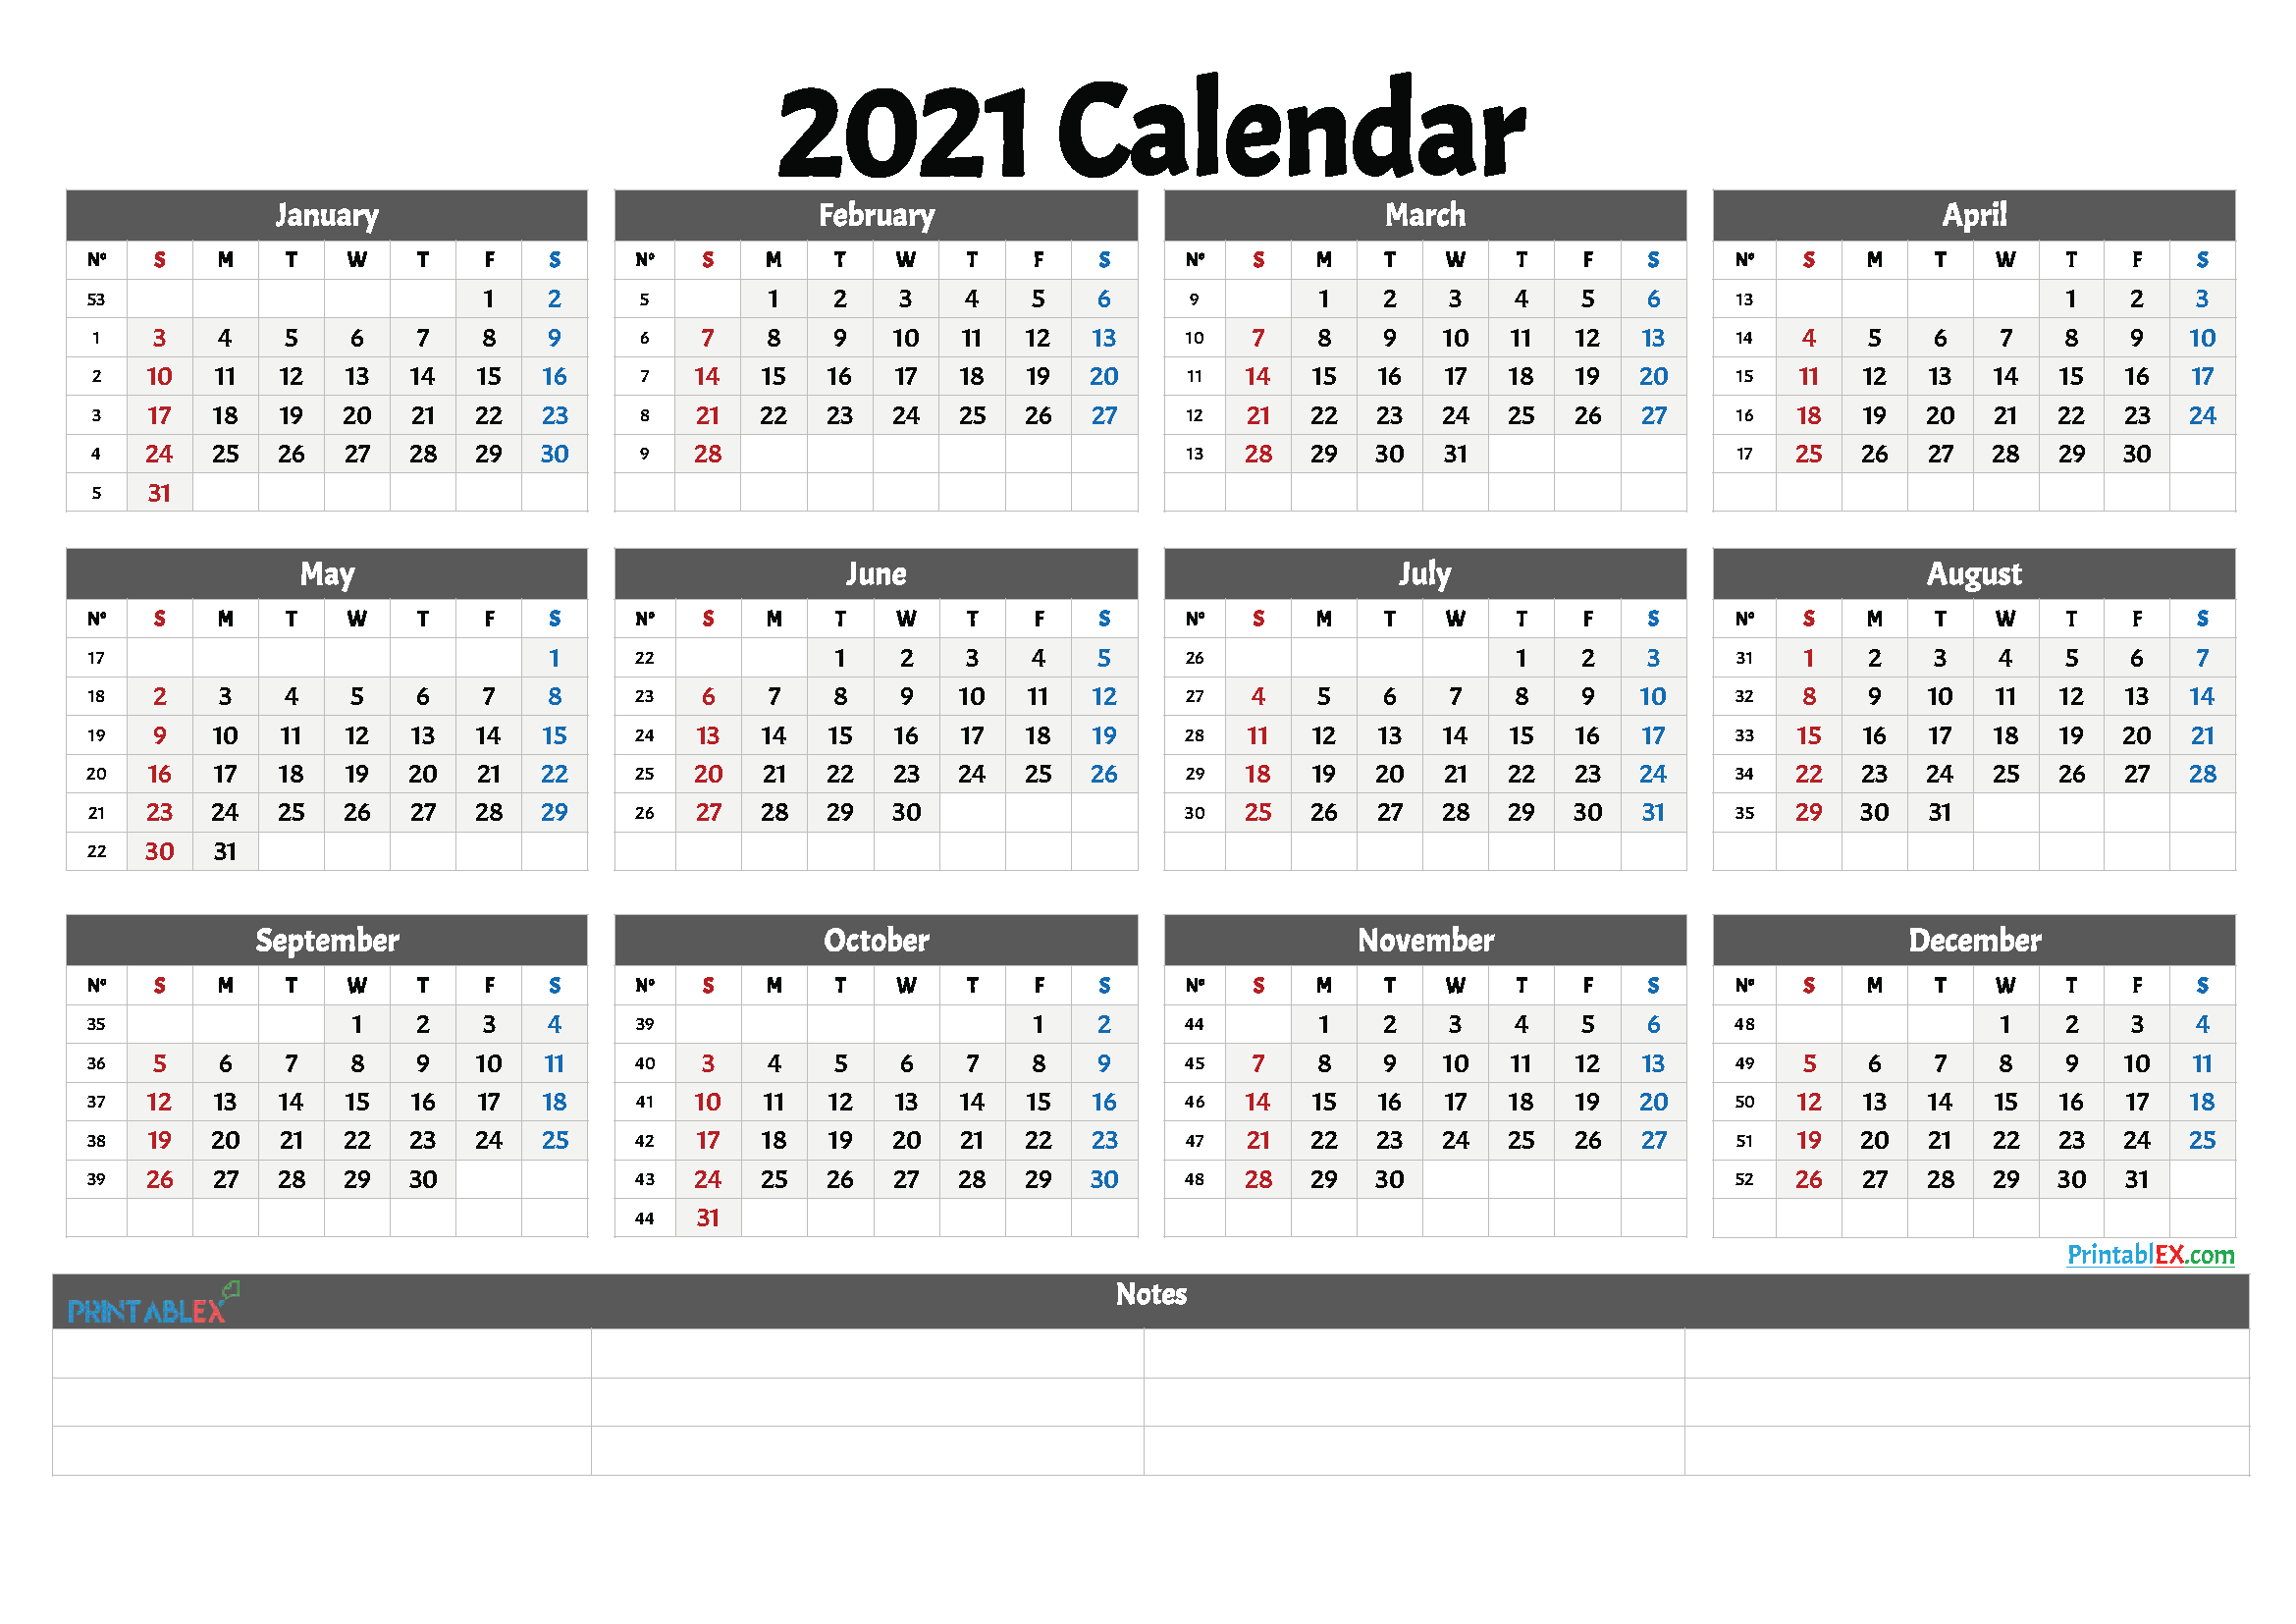 2021 Printable Calendar With Week Numbers | Free Printable ...